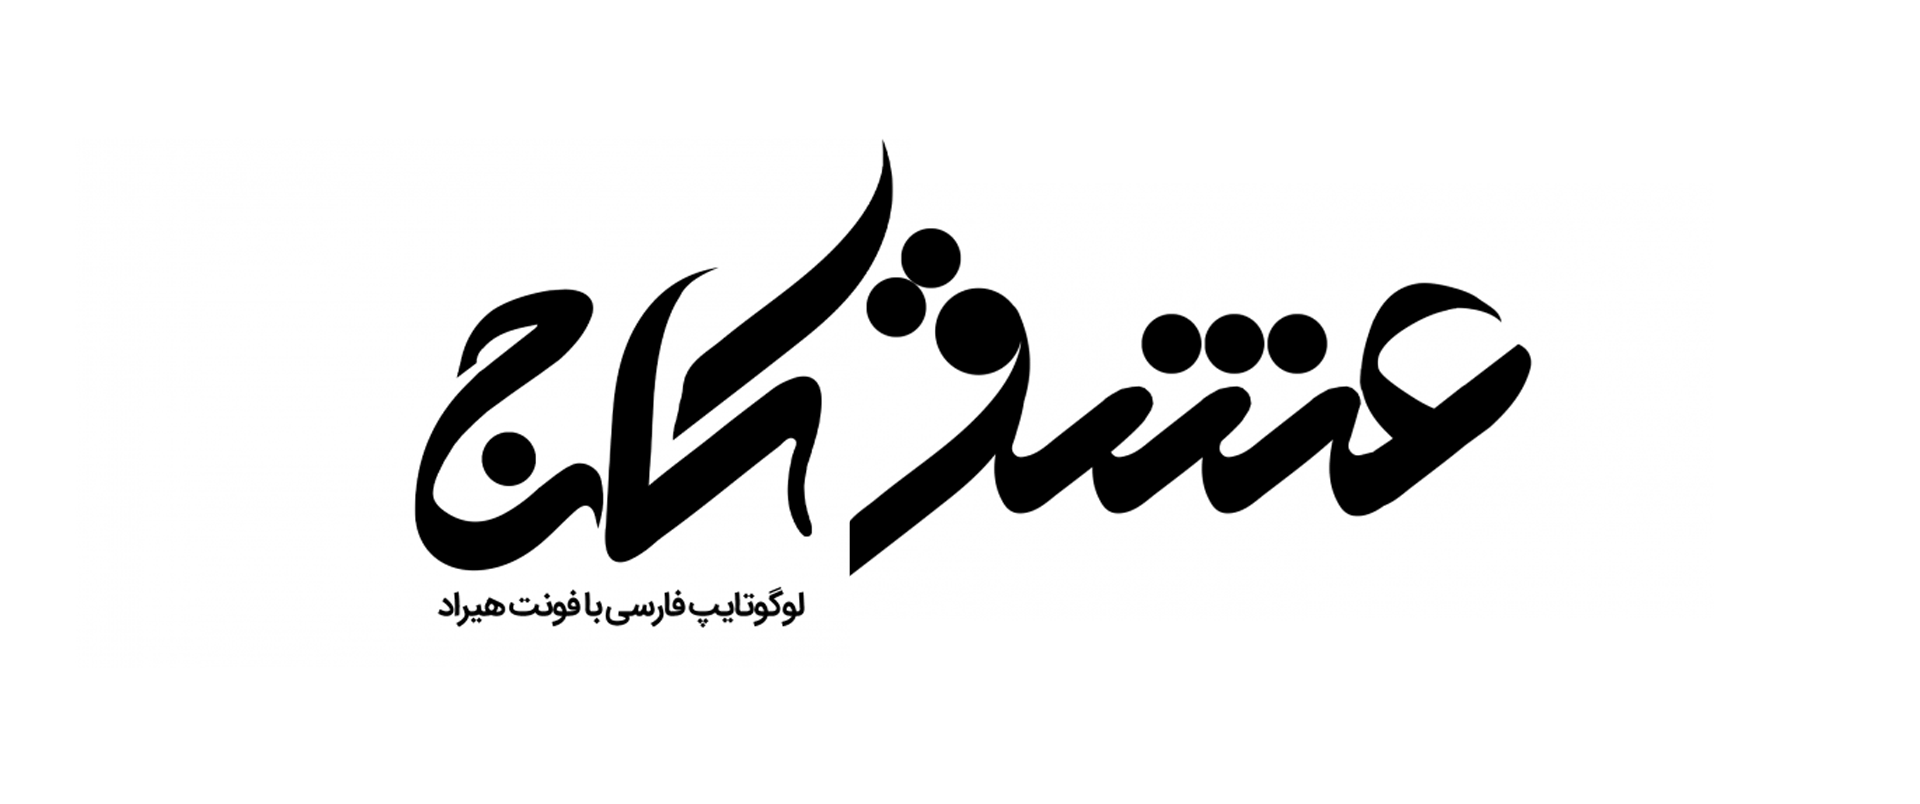 لوگوتایپ فارسی